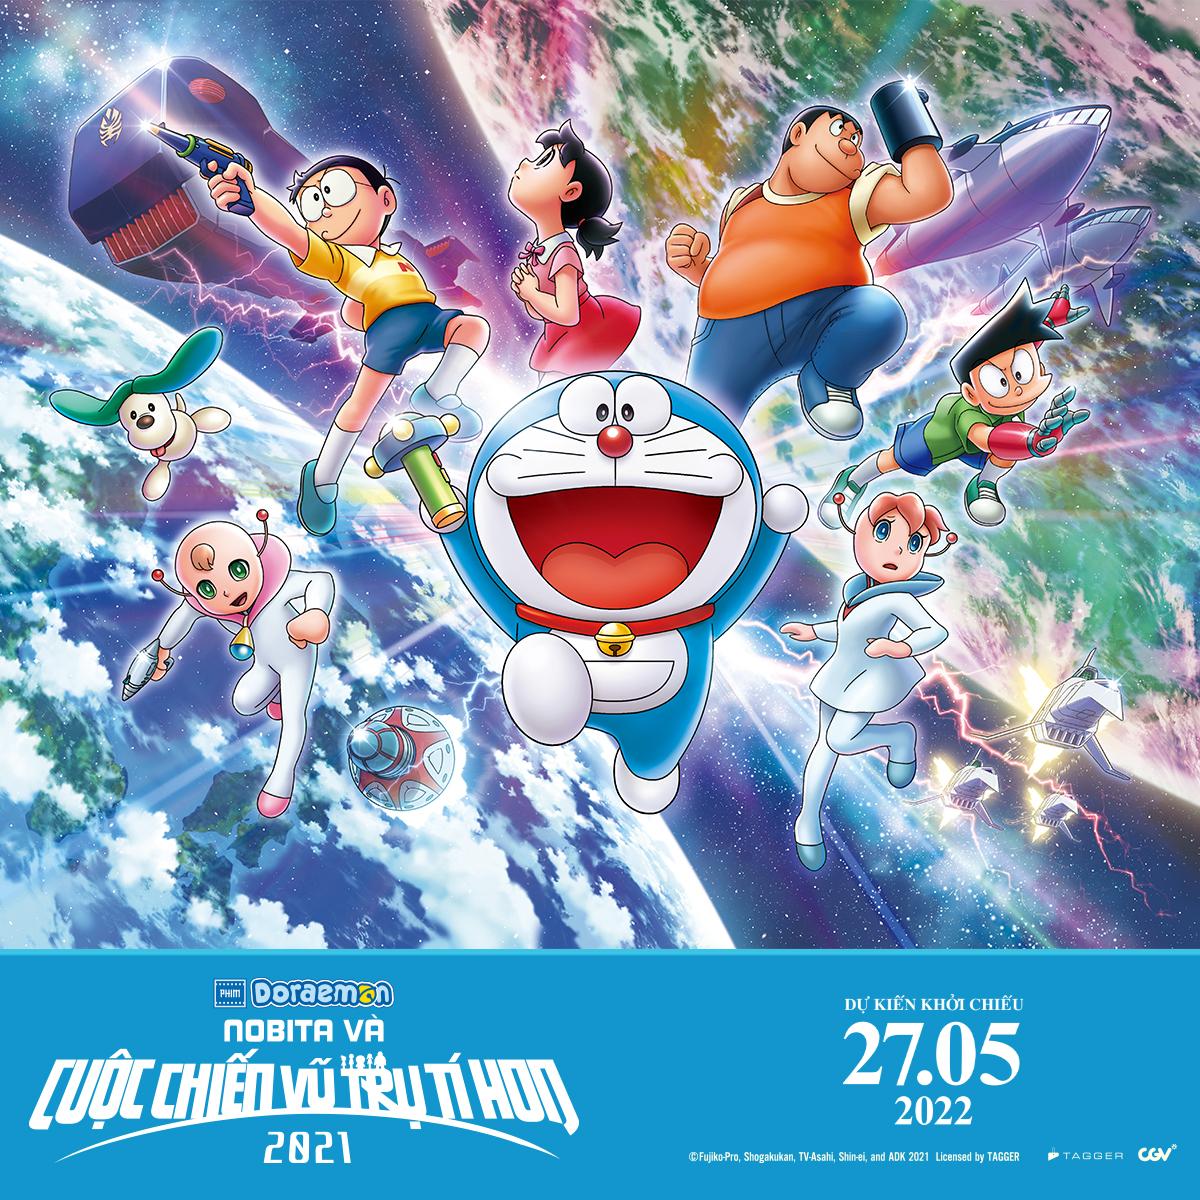 Thế giới Doraemon: Thế giới Doraemon luôn đầy màu sắc và những cuộc phiêu lưu thú vị. Hãy ngắm nhìn bức ảnh này và đắm mình trong thế giới đáng yêu và ấm áp của Doraemon. Bạn sẽ không muốn rời khỏi điều gì đó đó đặc biệt khi khám phá xong!